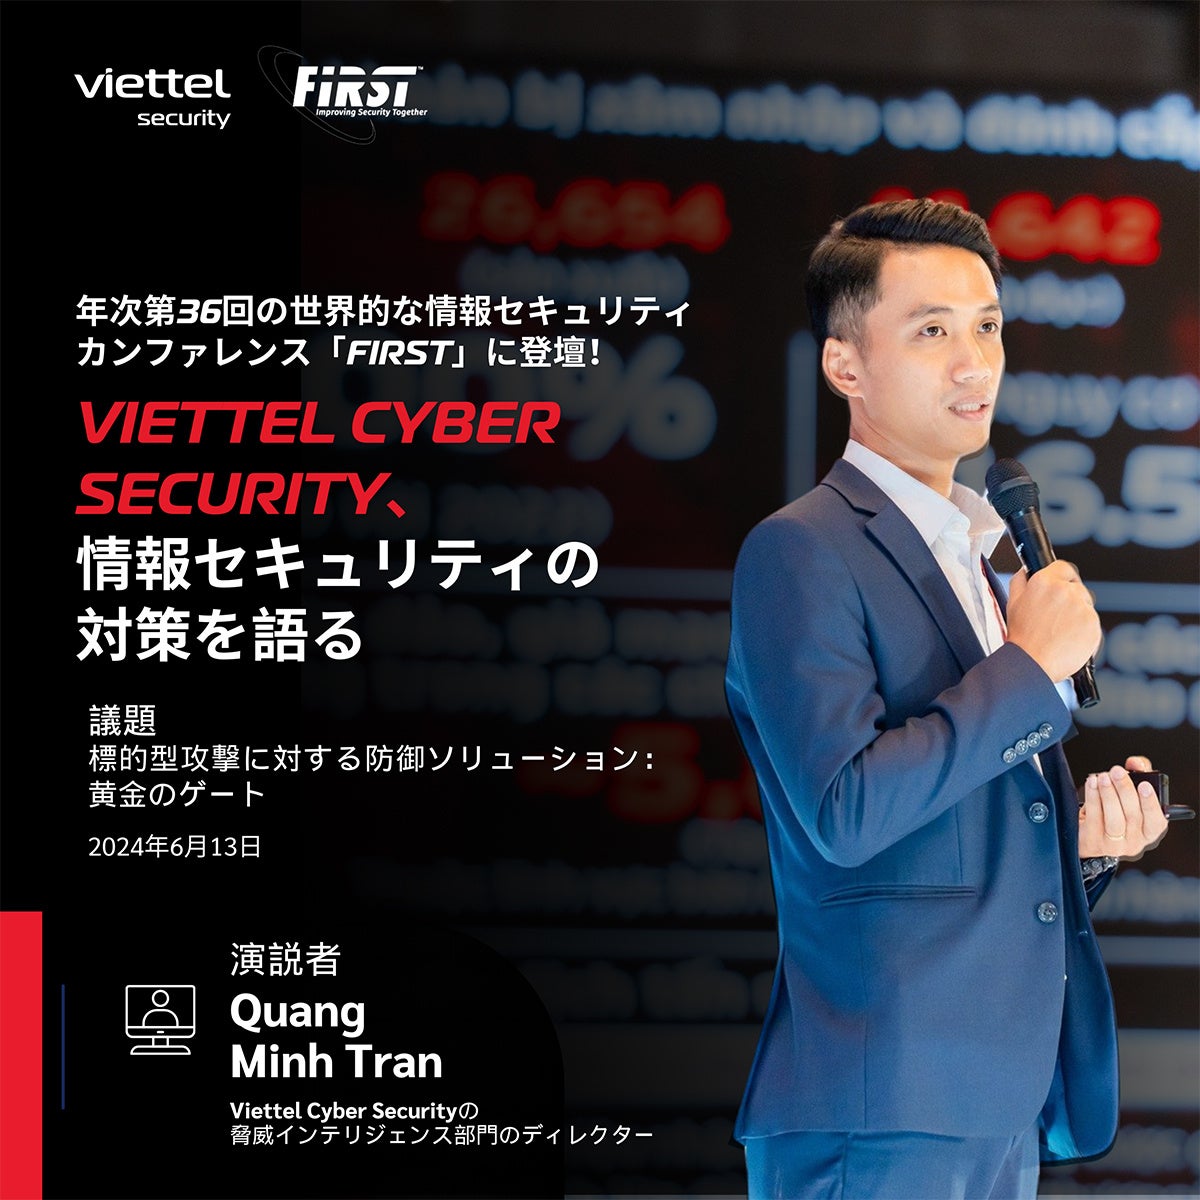 VIETTEL CYBER SECURITYの専門家が世界トップの情報セキュリティカンファレンス「FIRST」で講演